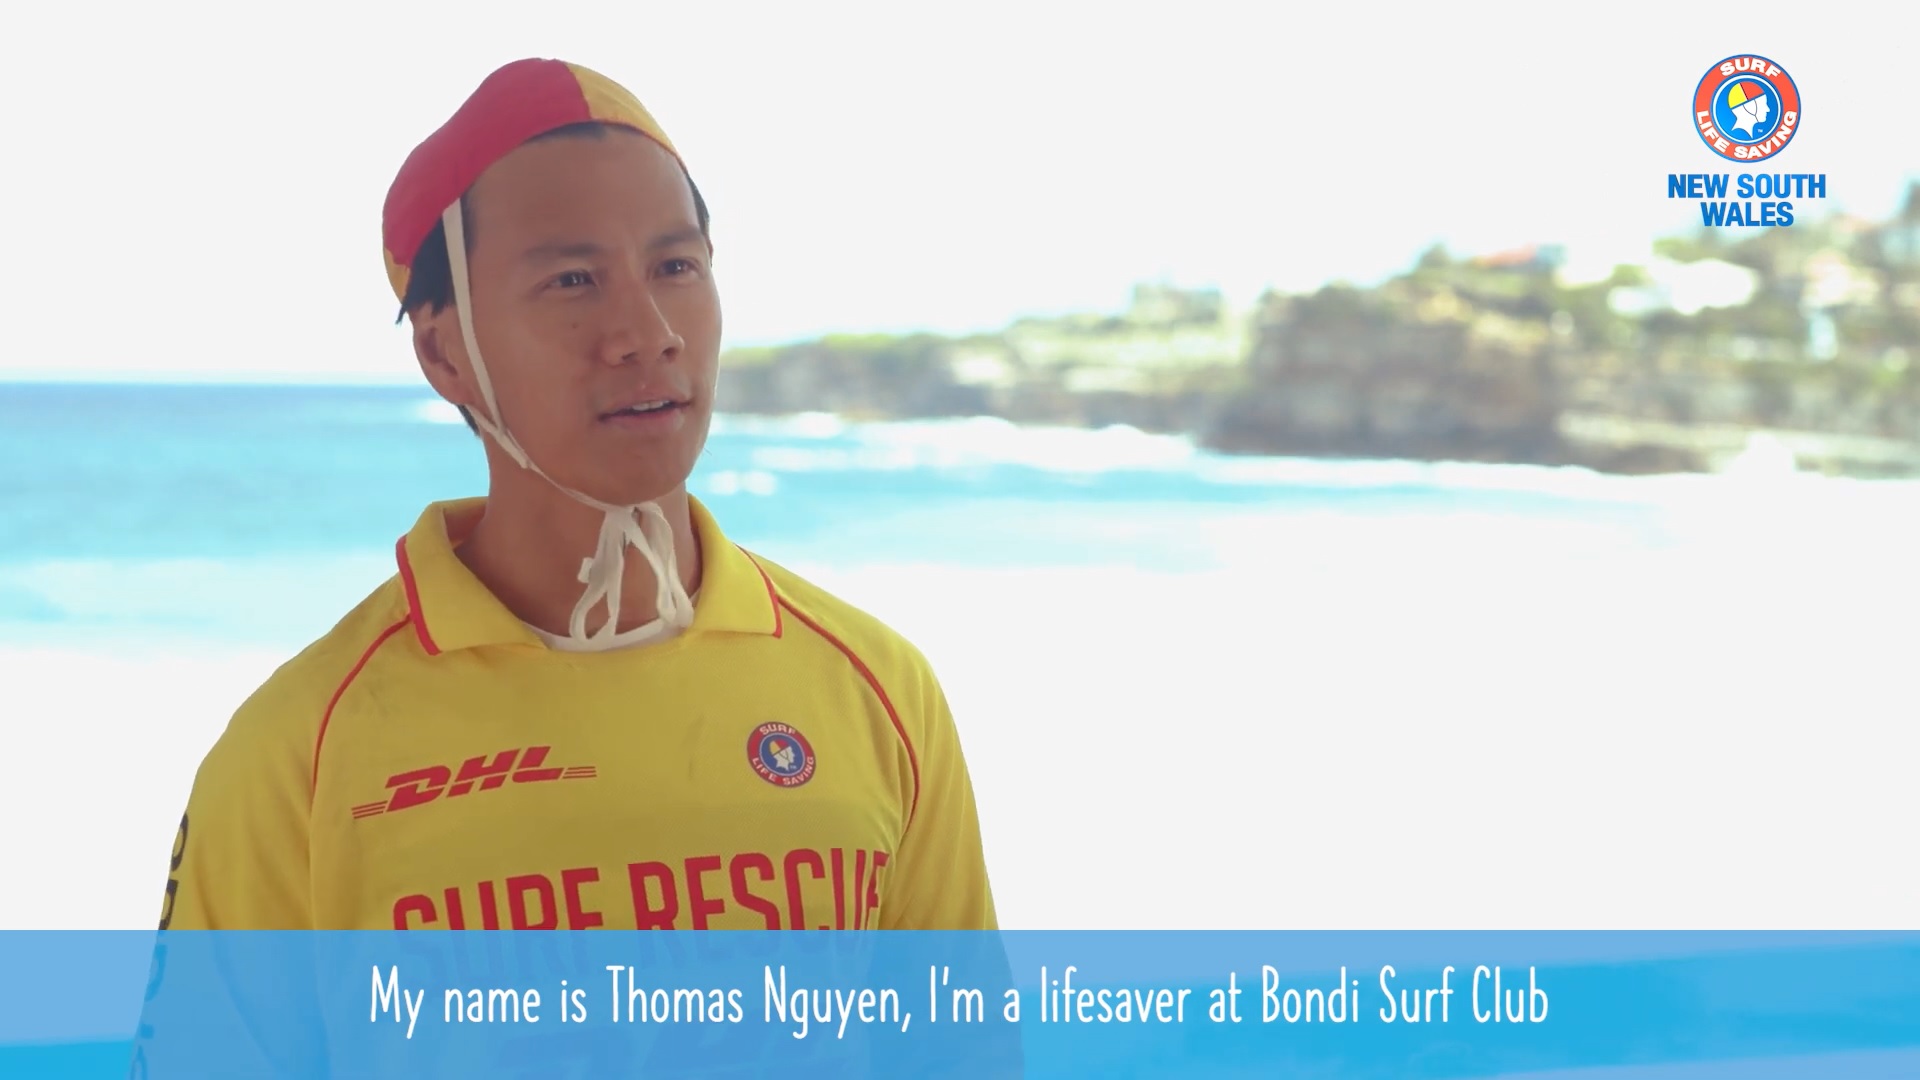 Meet A Lifesaver - Thomas Nguyen